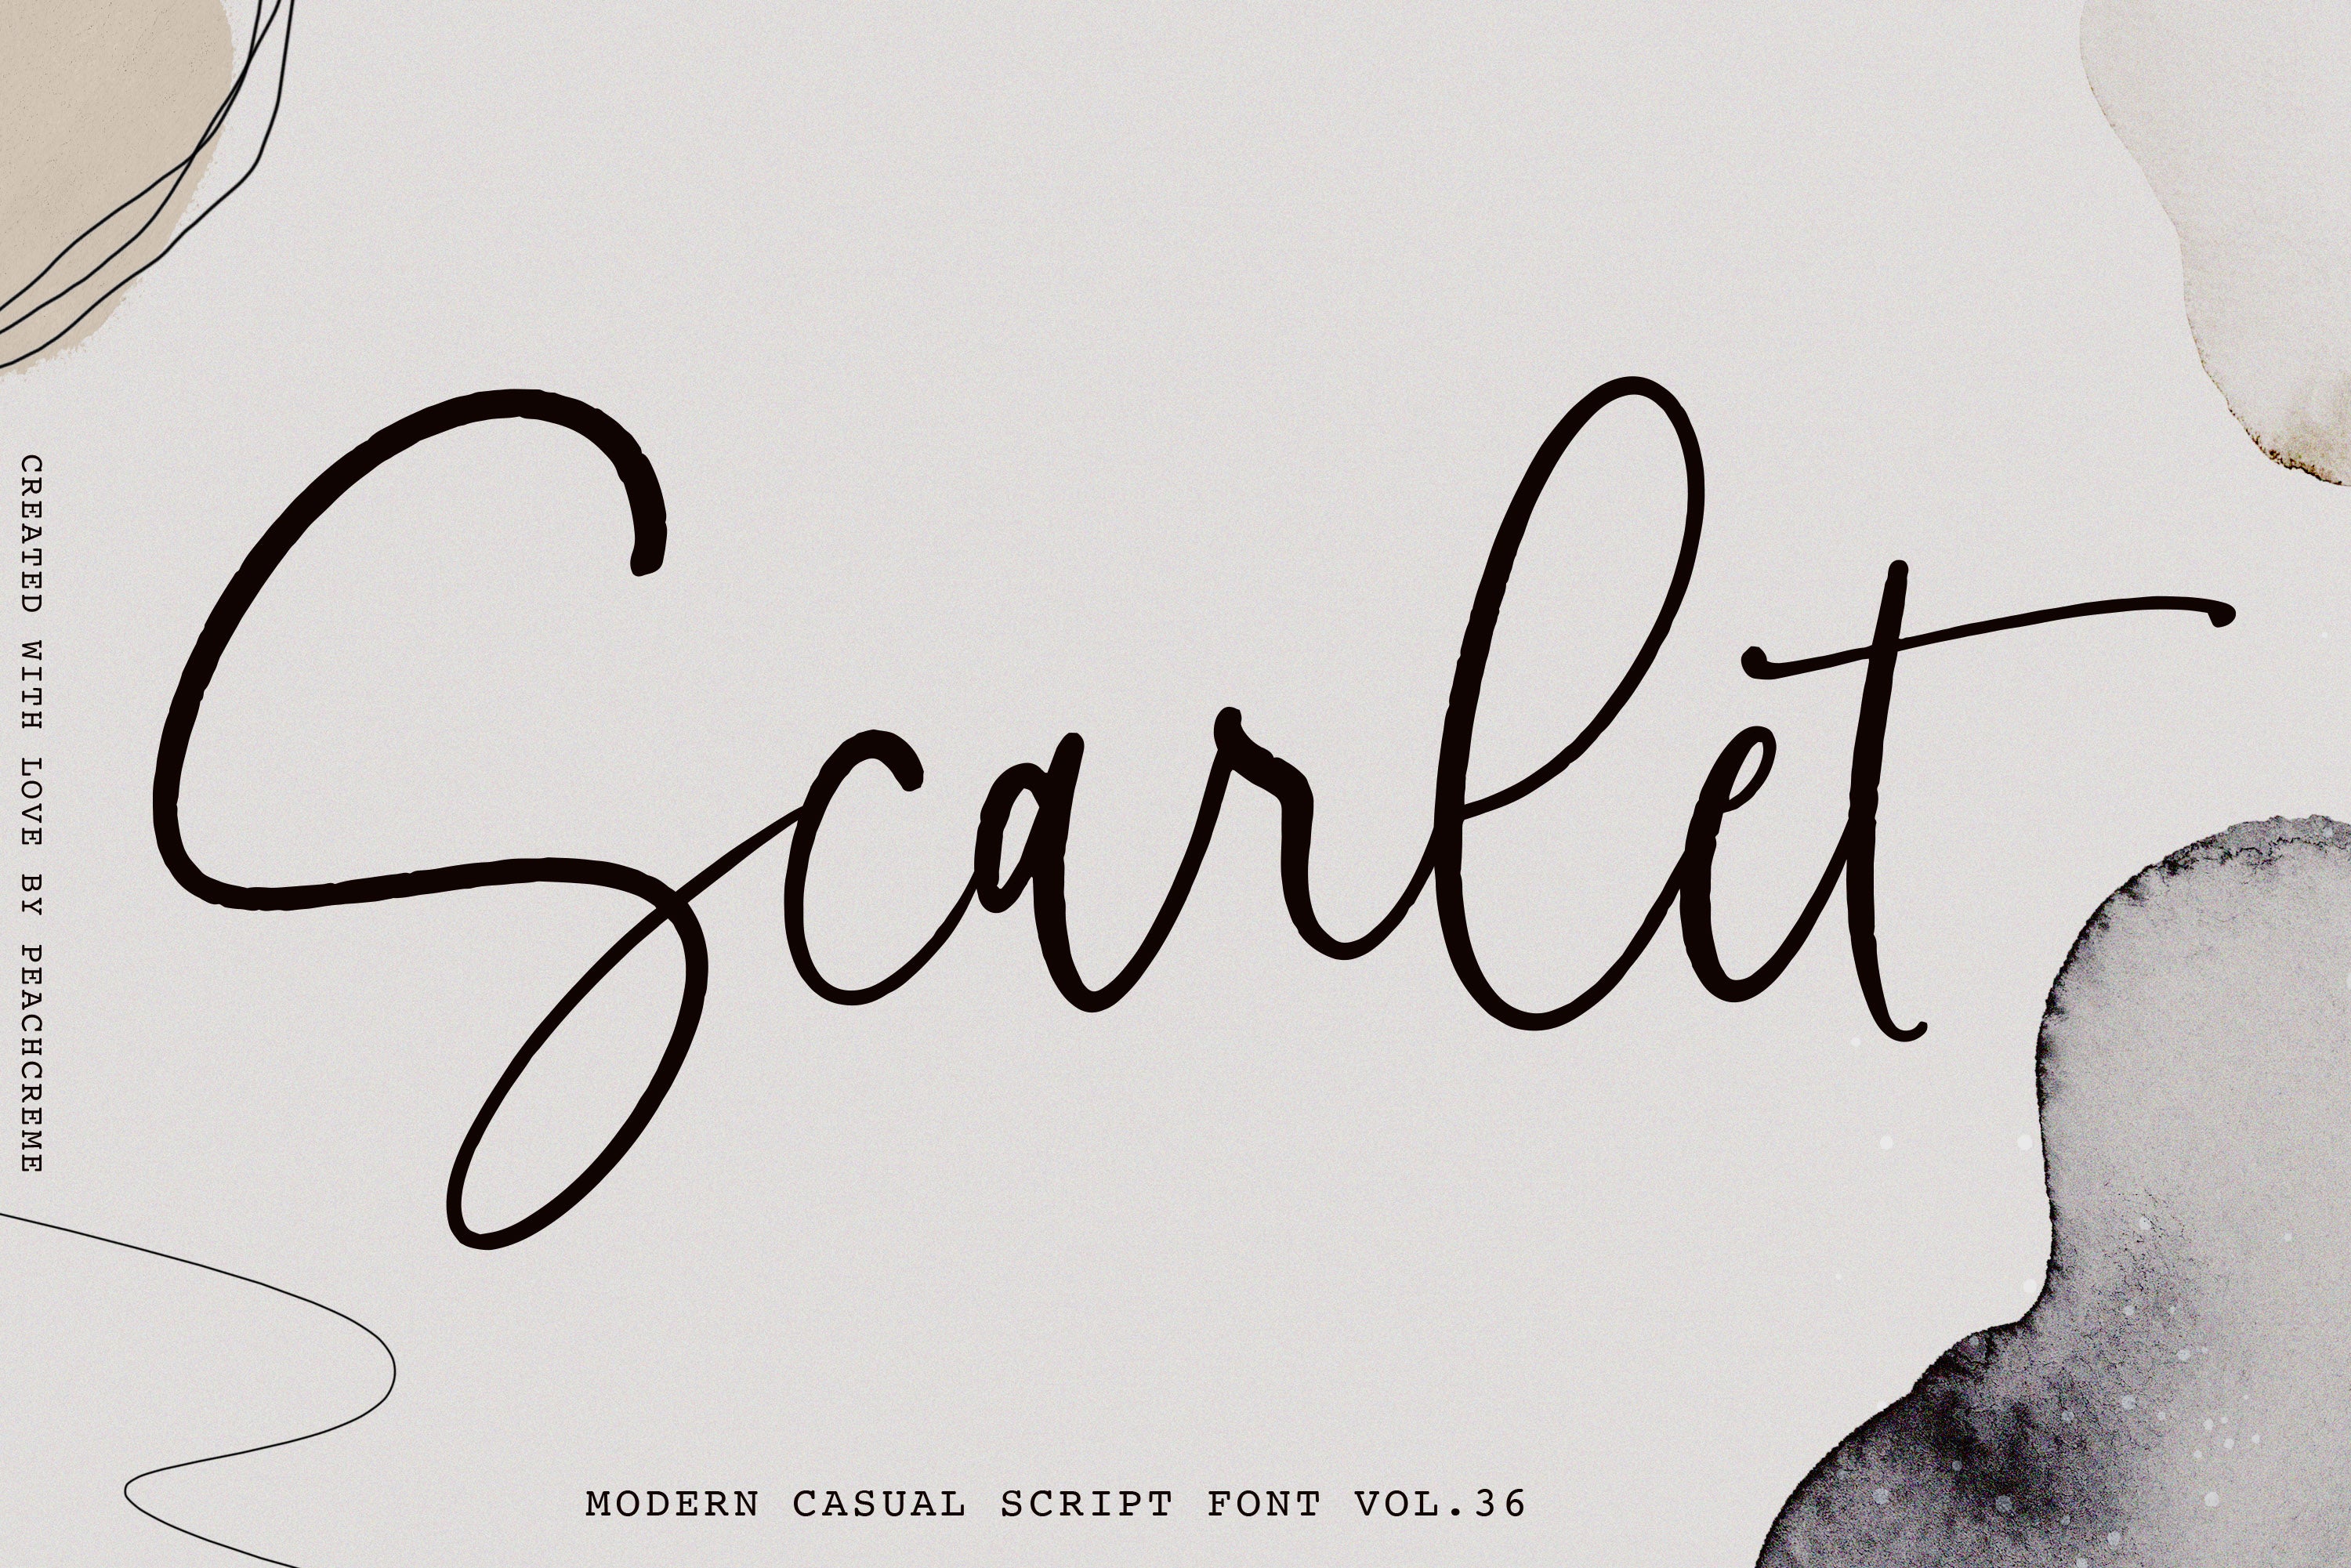 Scarlet Font - Download Free Font